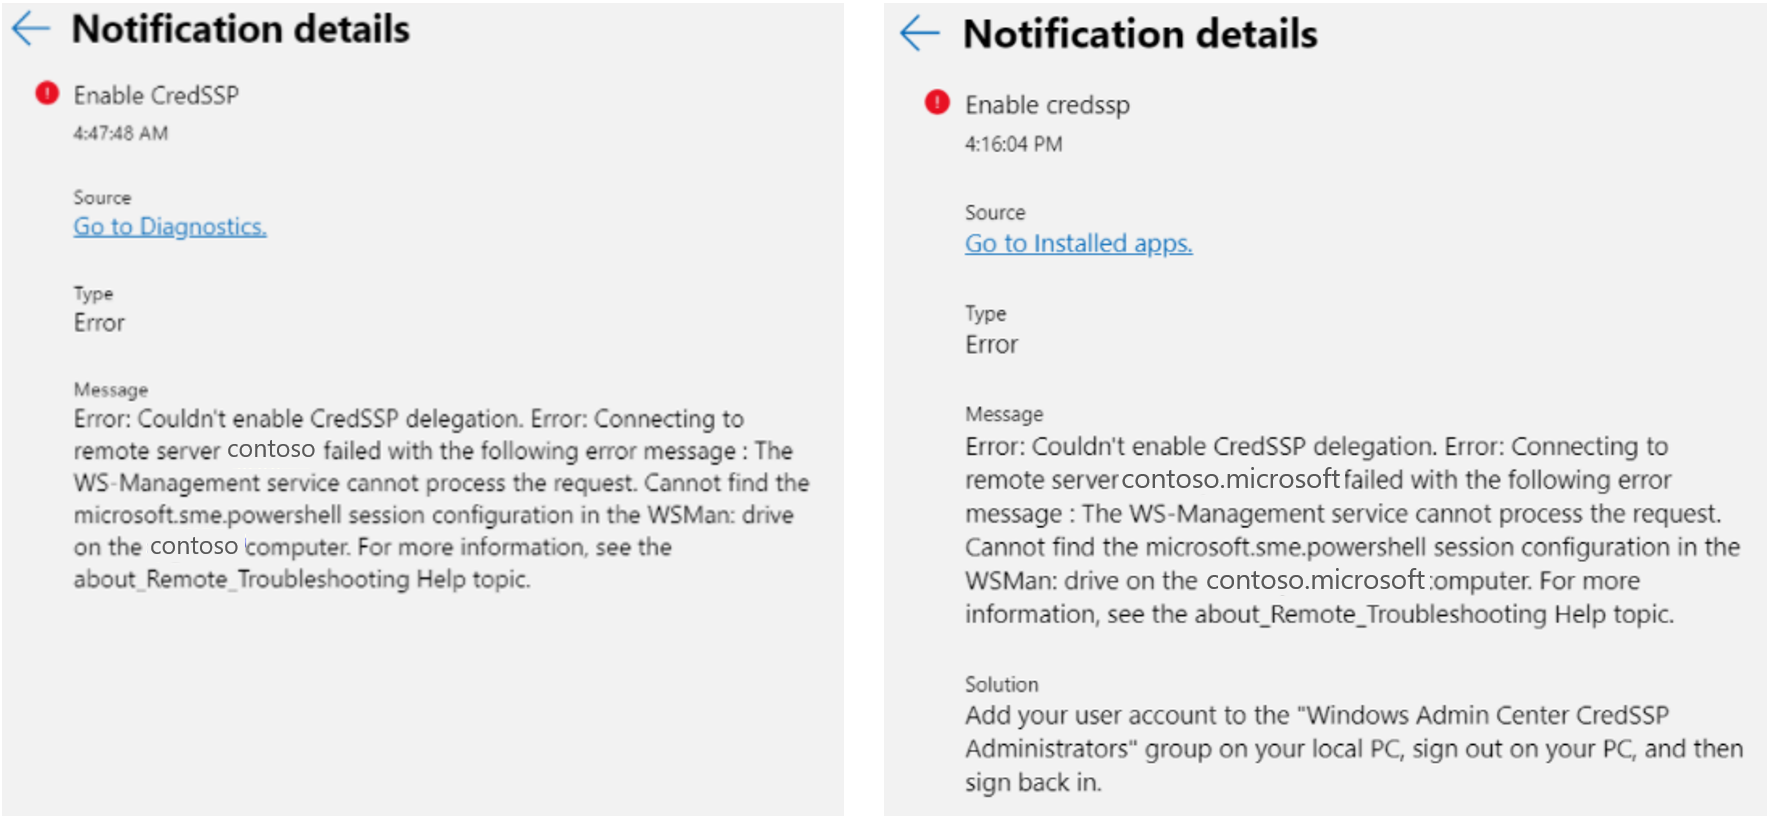 Uma comparação lado a lado da notificação de erro de permissão de ponto de extremidade para Cred S S P no Windows Admin Center.